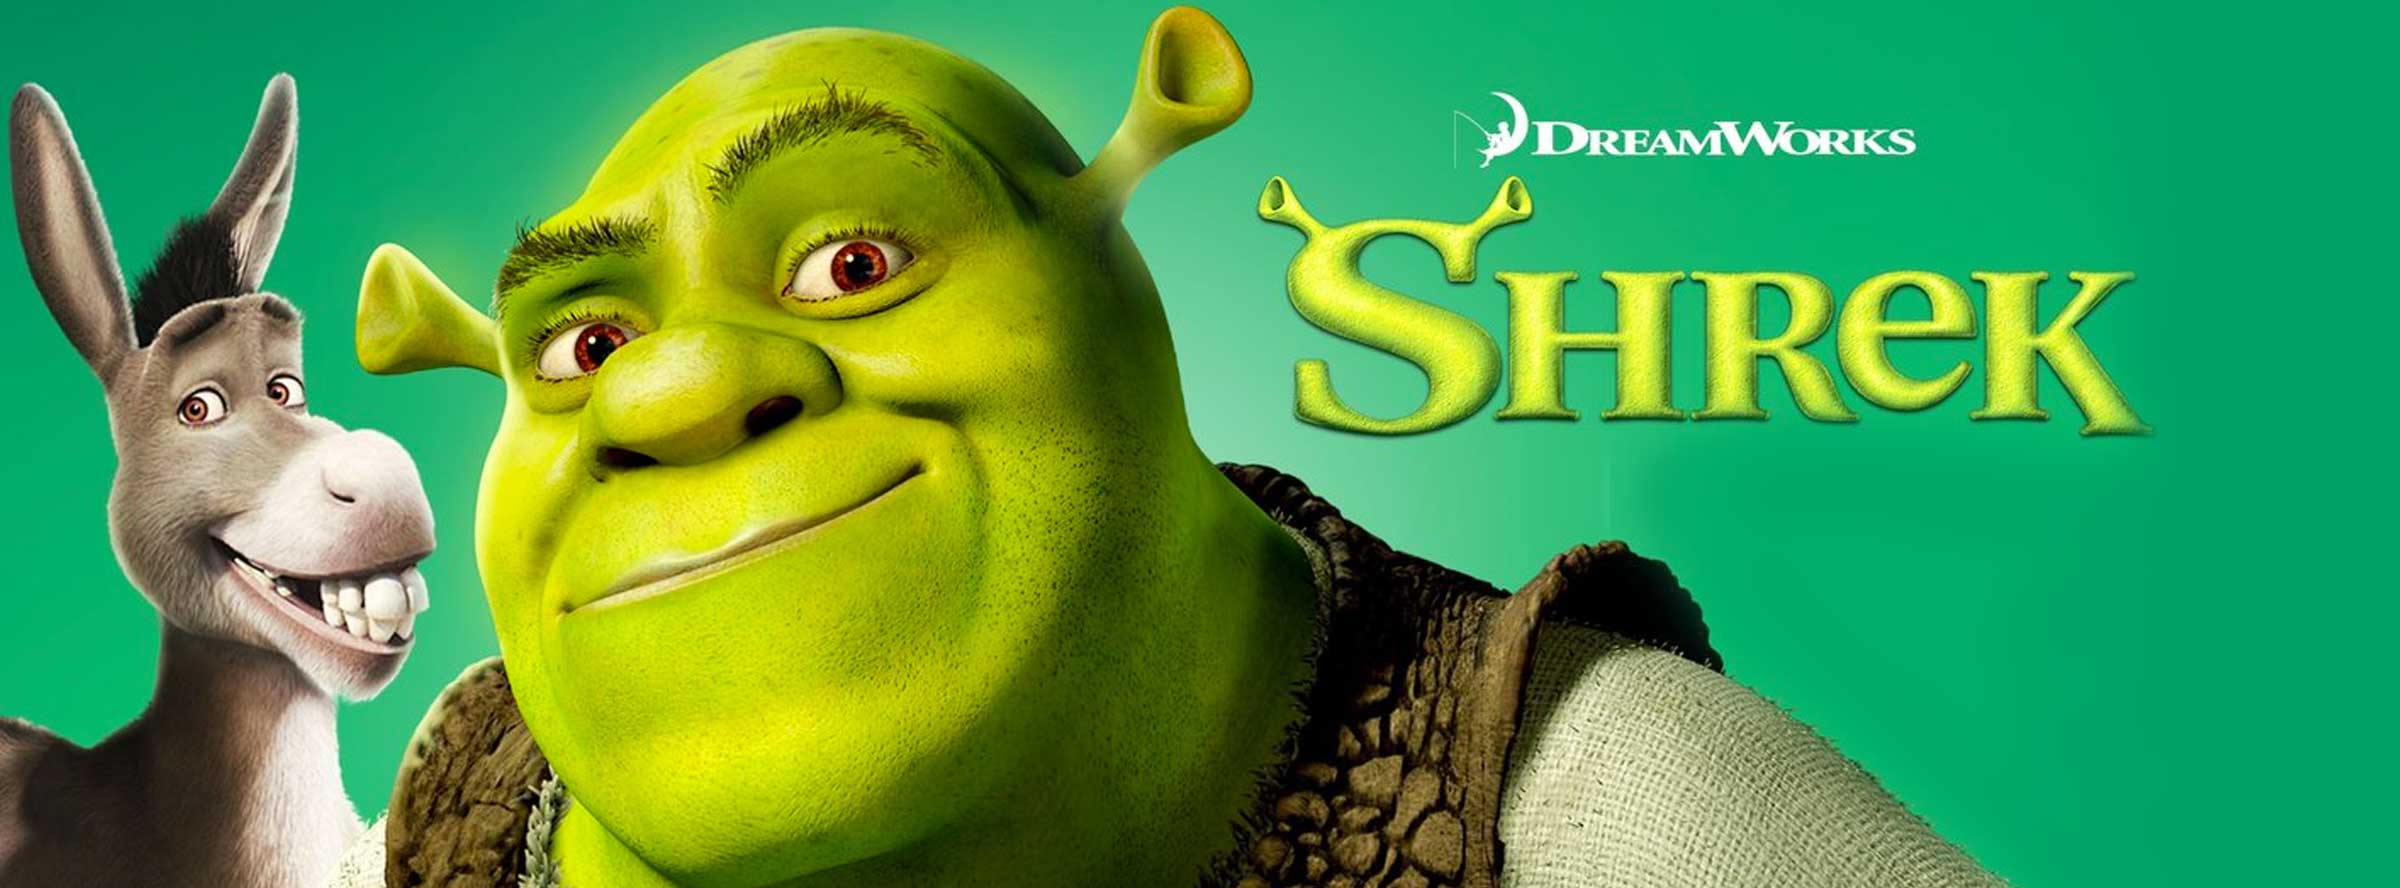 Slider Image for Shrek